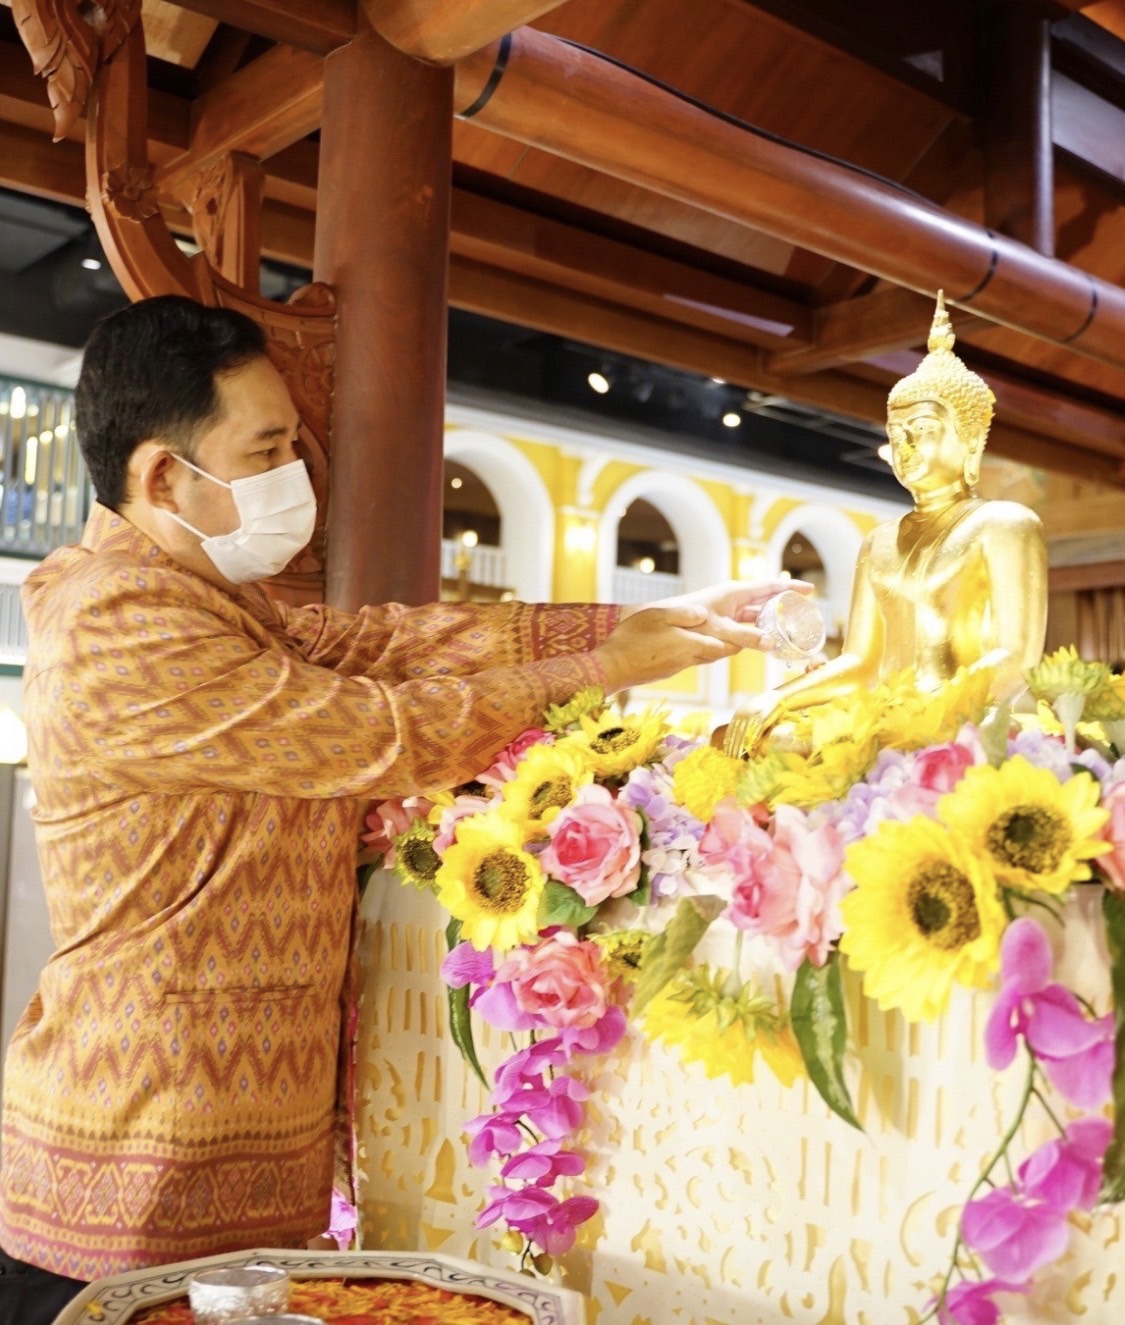 วธ.เผยผลโพลประชาชนยุคโควิด-19 ส่วนใหญ่อยากให้จัดงานสงกรานต์แบบออนไซต์และออนไลน์ เพื่อสืบสานเทศกาลประเพณีไทย